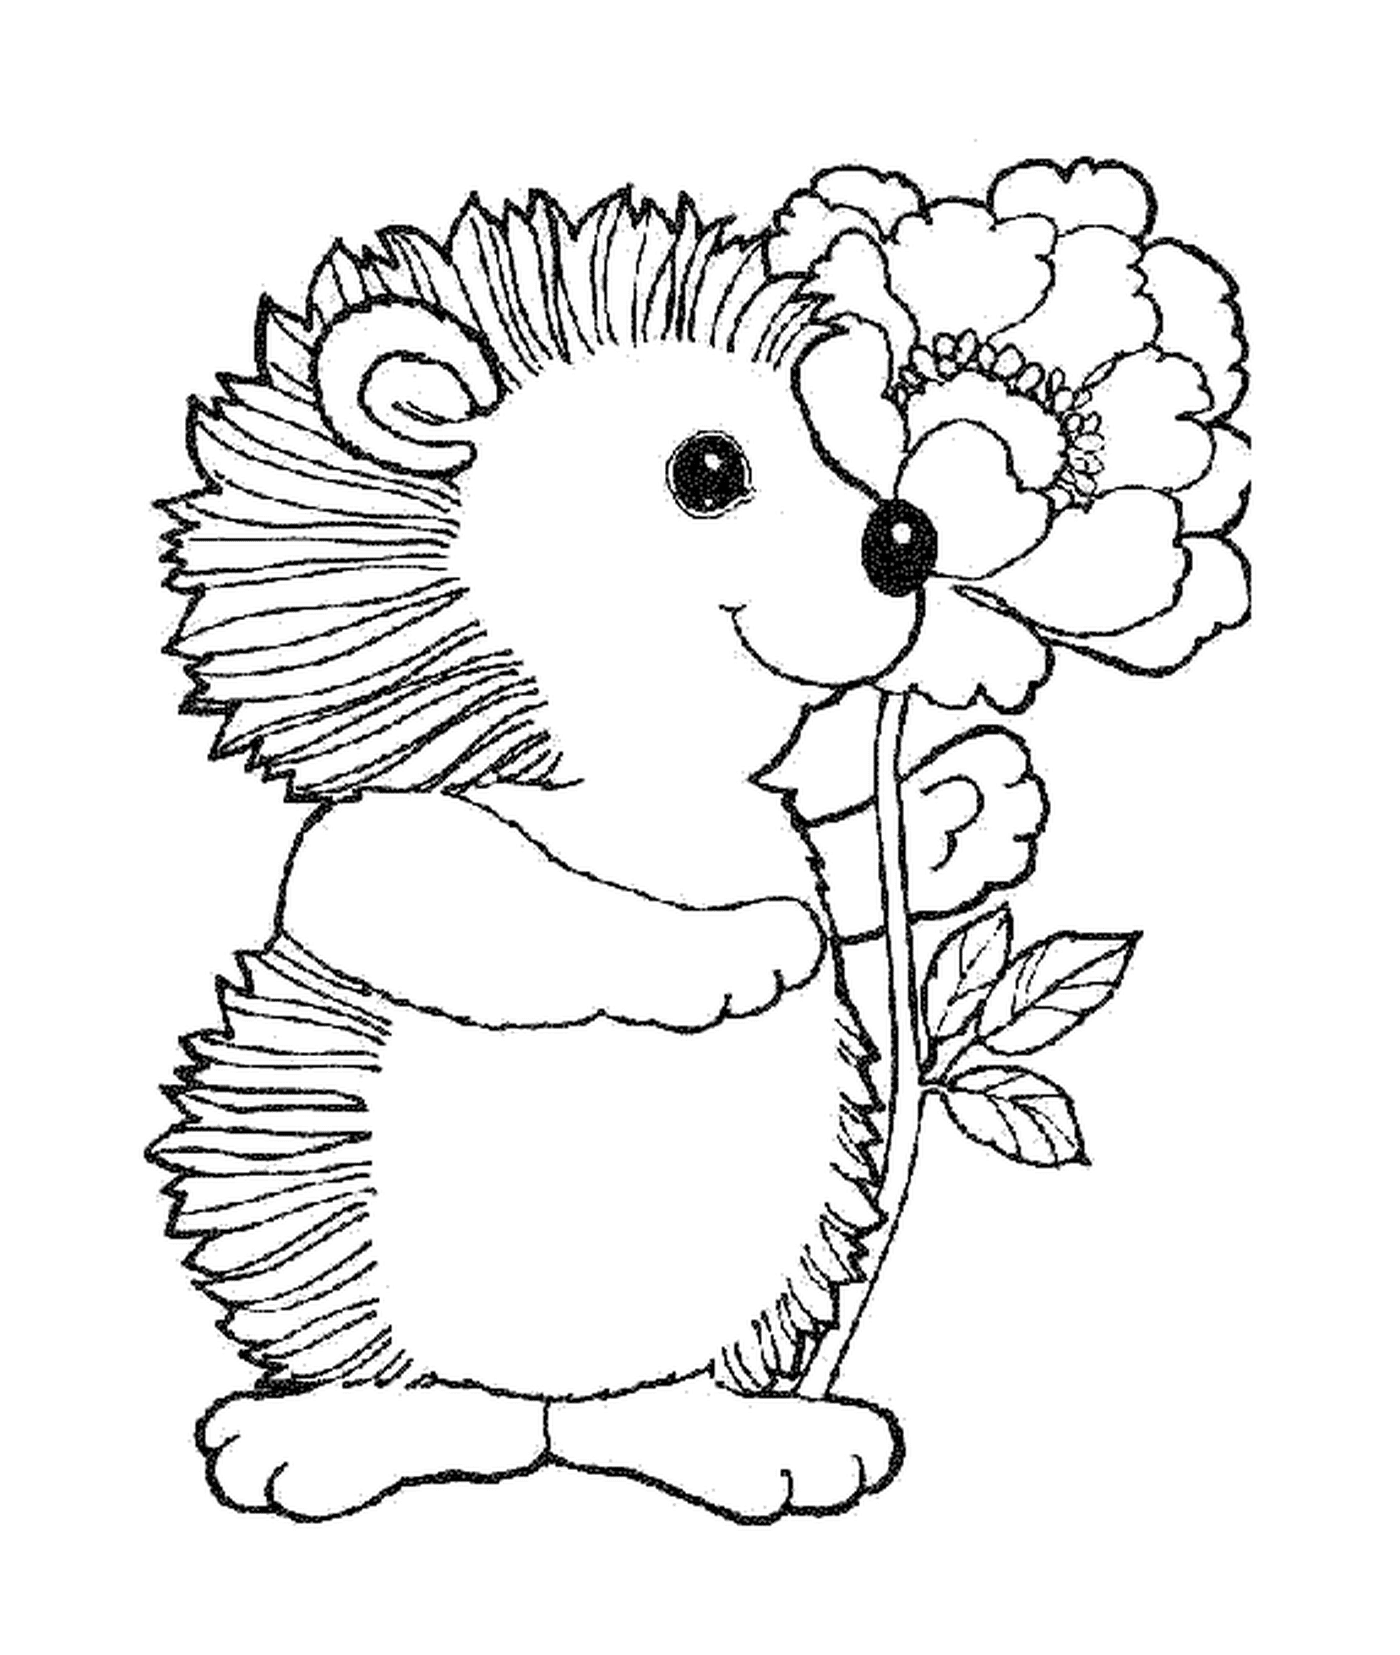  Hedgehog com uma flor bonita 